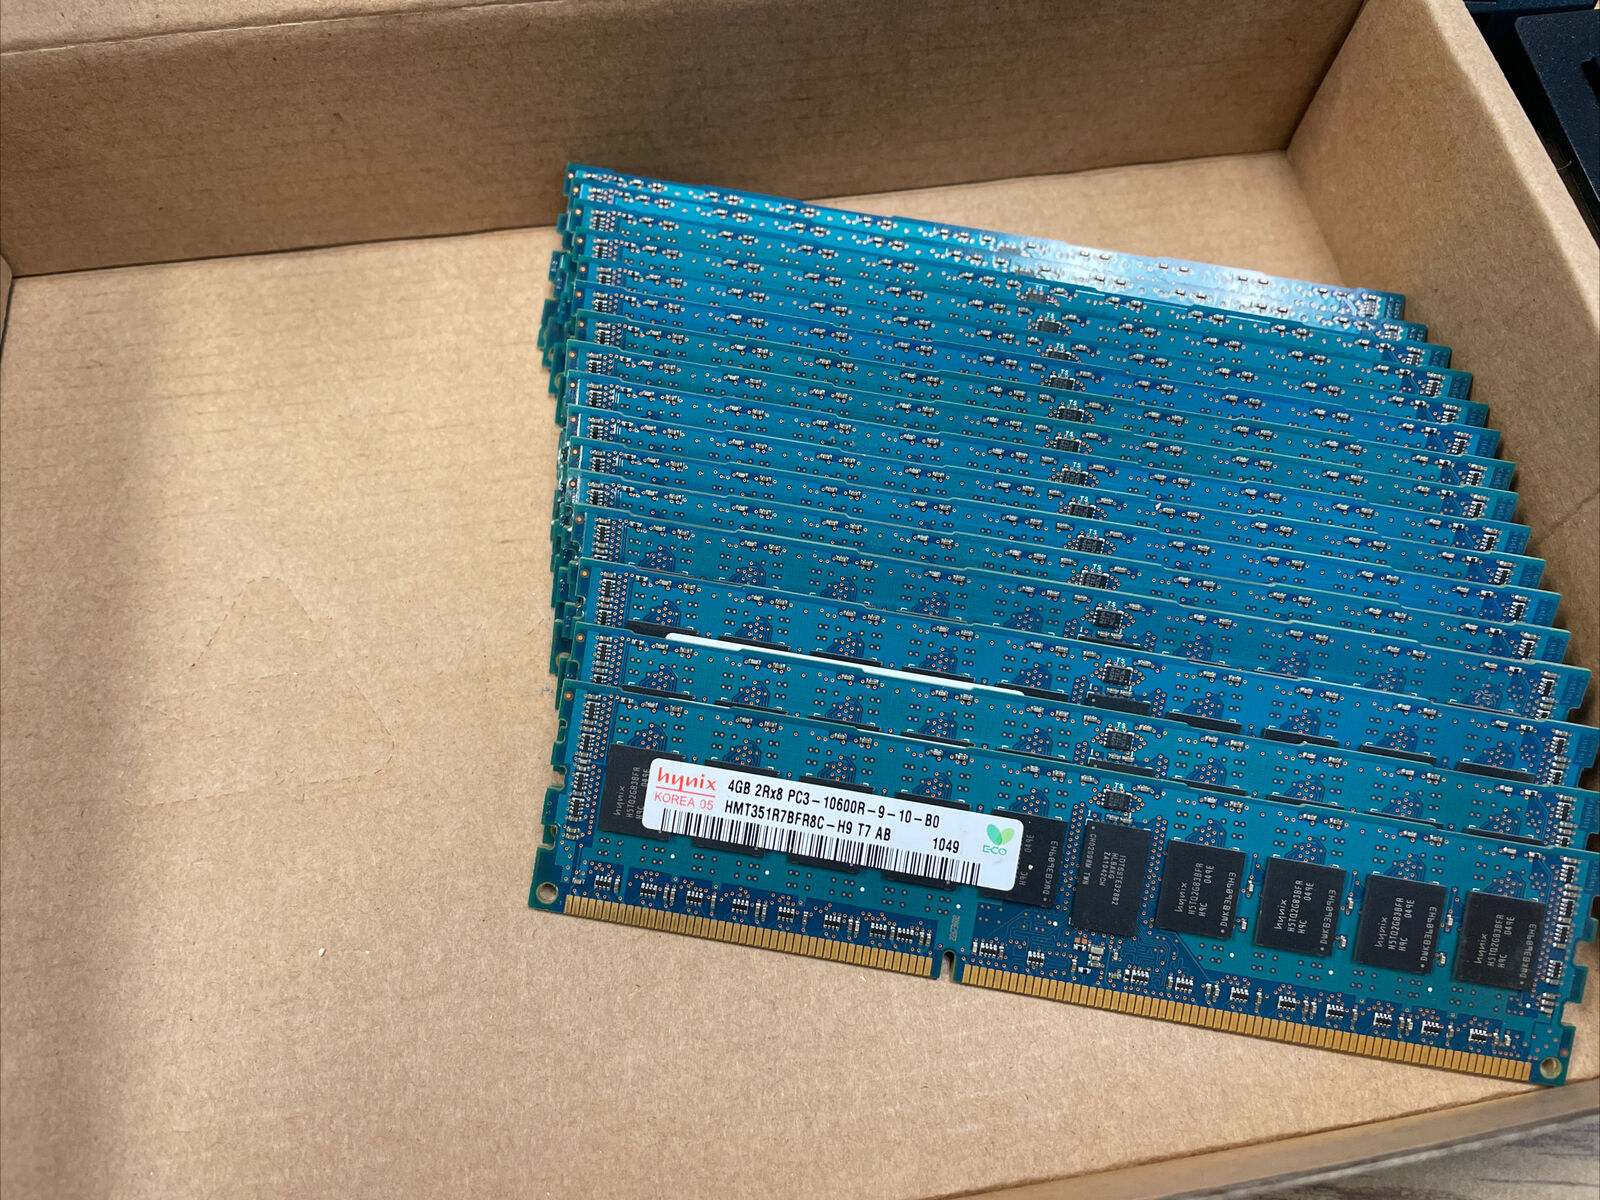 16x4GB=64GB hynix DDR3 2Rx8 PC3-10600R-09-10-B0 HMT351R7BFR8C-H9 (serve Ram)